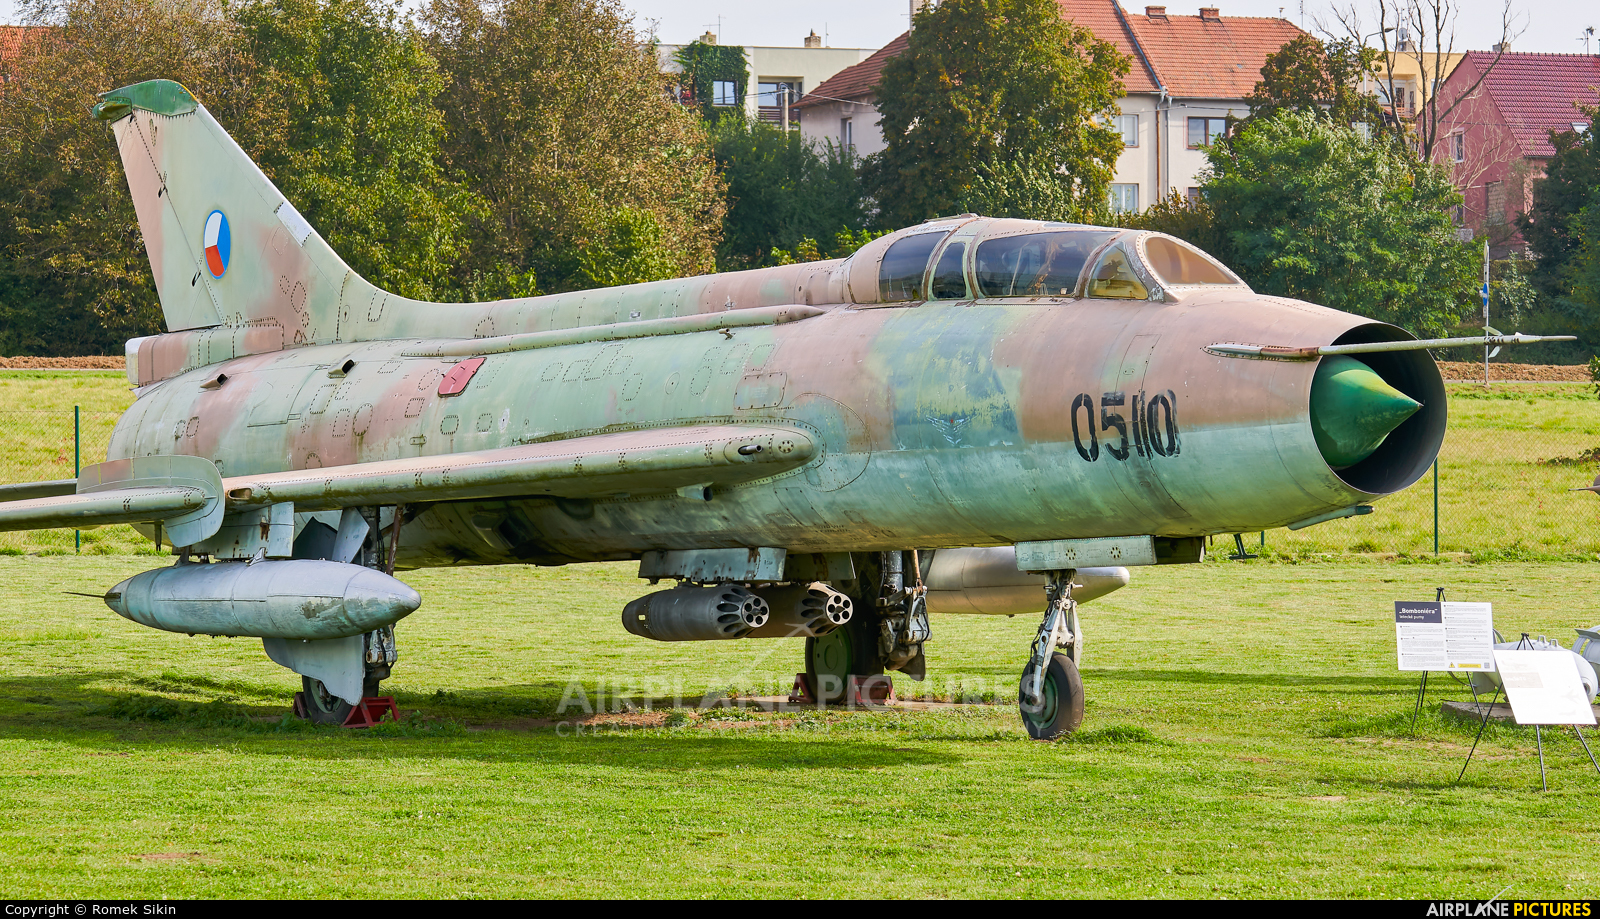 Czechoslovak - Air Force 0510 aircraft at Uherské Hradiště - Kunovice